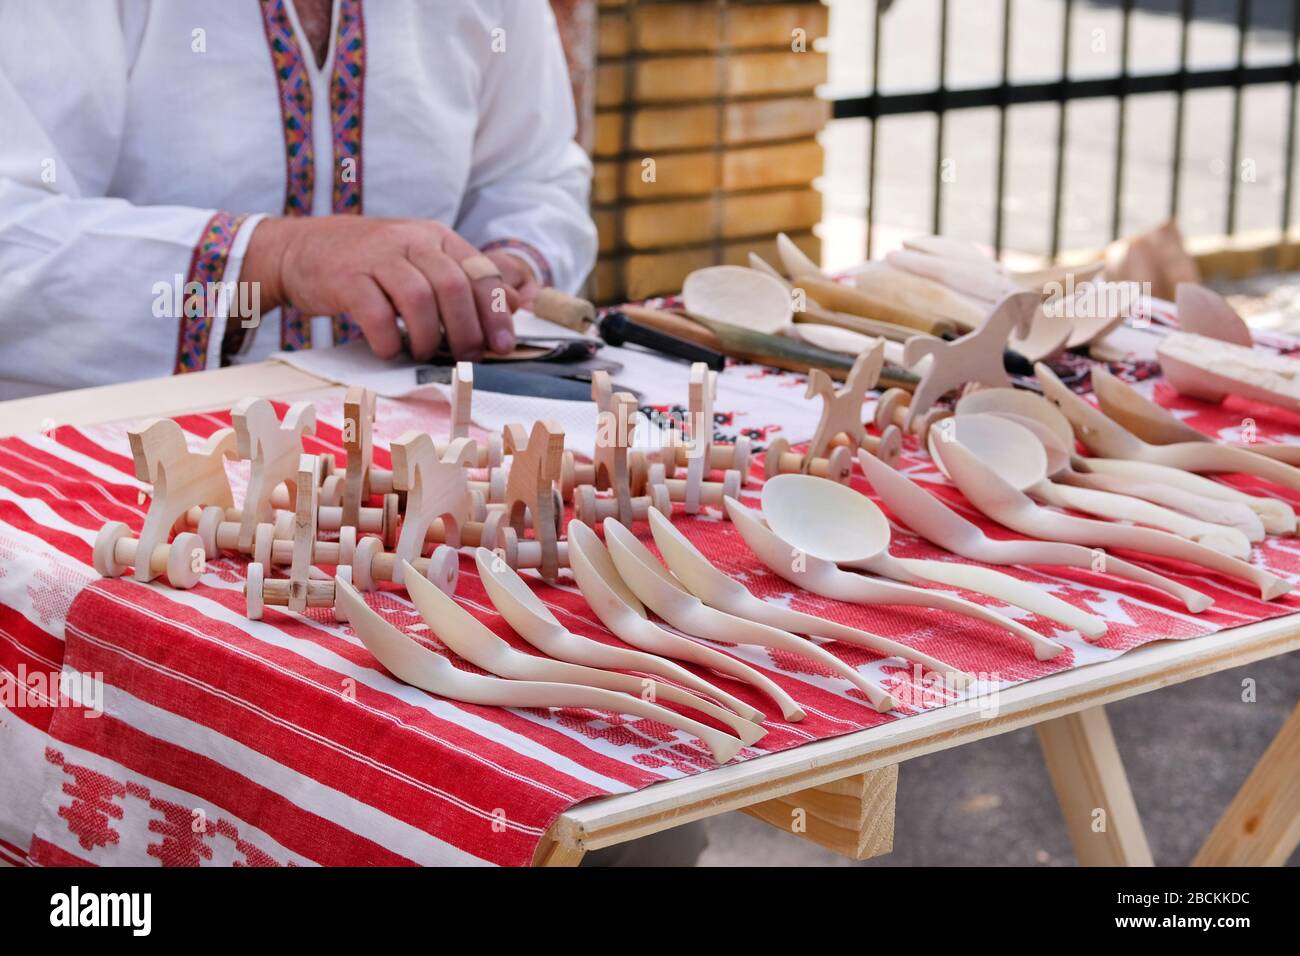 Le vendeur a mis en place des objets artisanaux en bois sur la nappe avec des motifs nationaux. Concept d'artisanat national. Banque D'Images